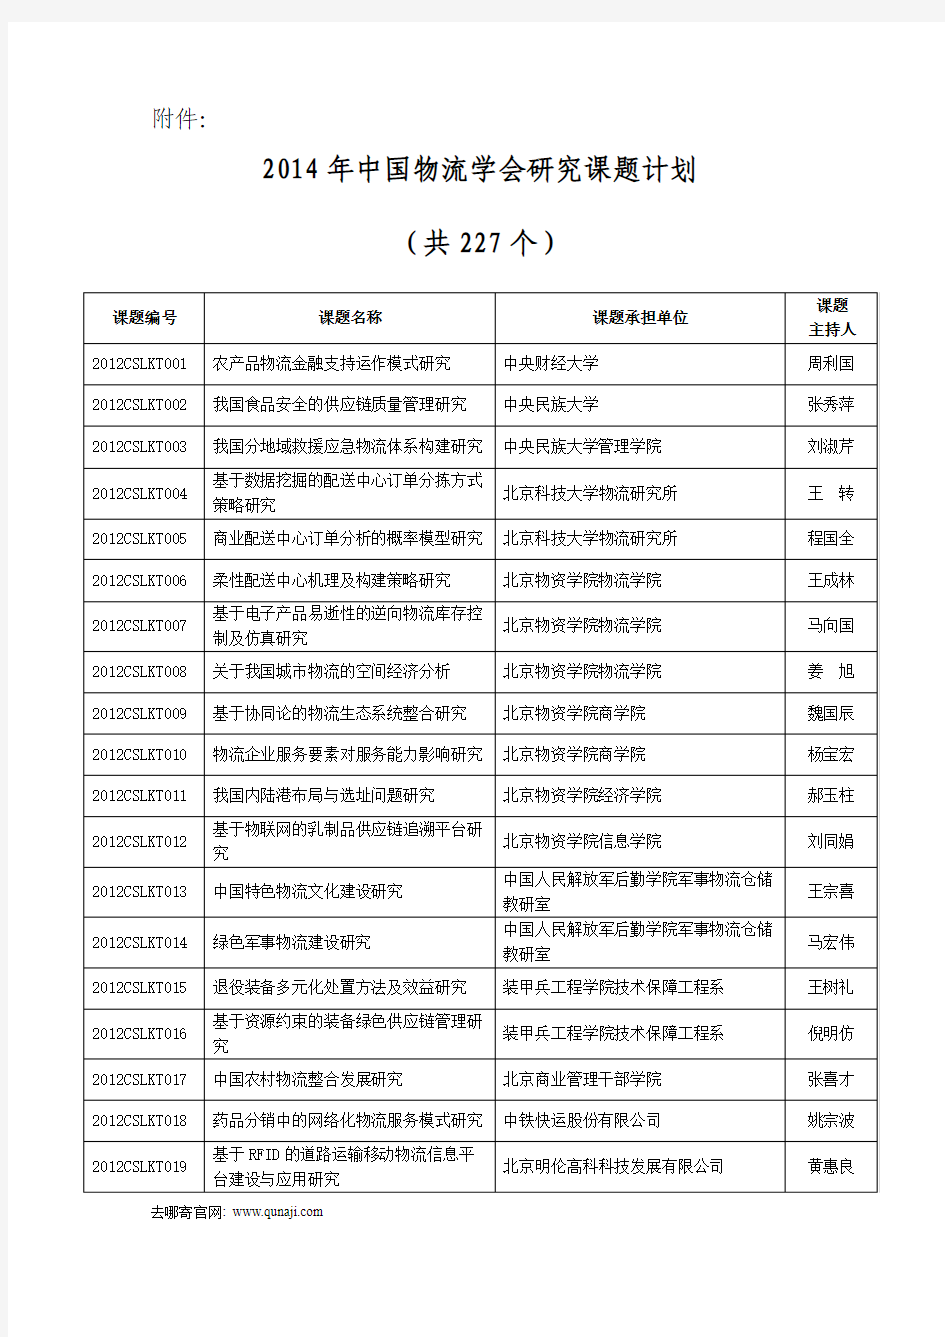 2014年中国物流学会研究课题计划 (共227个)